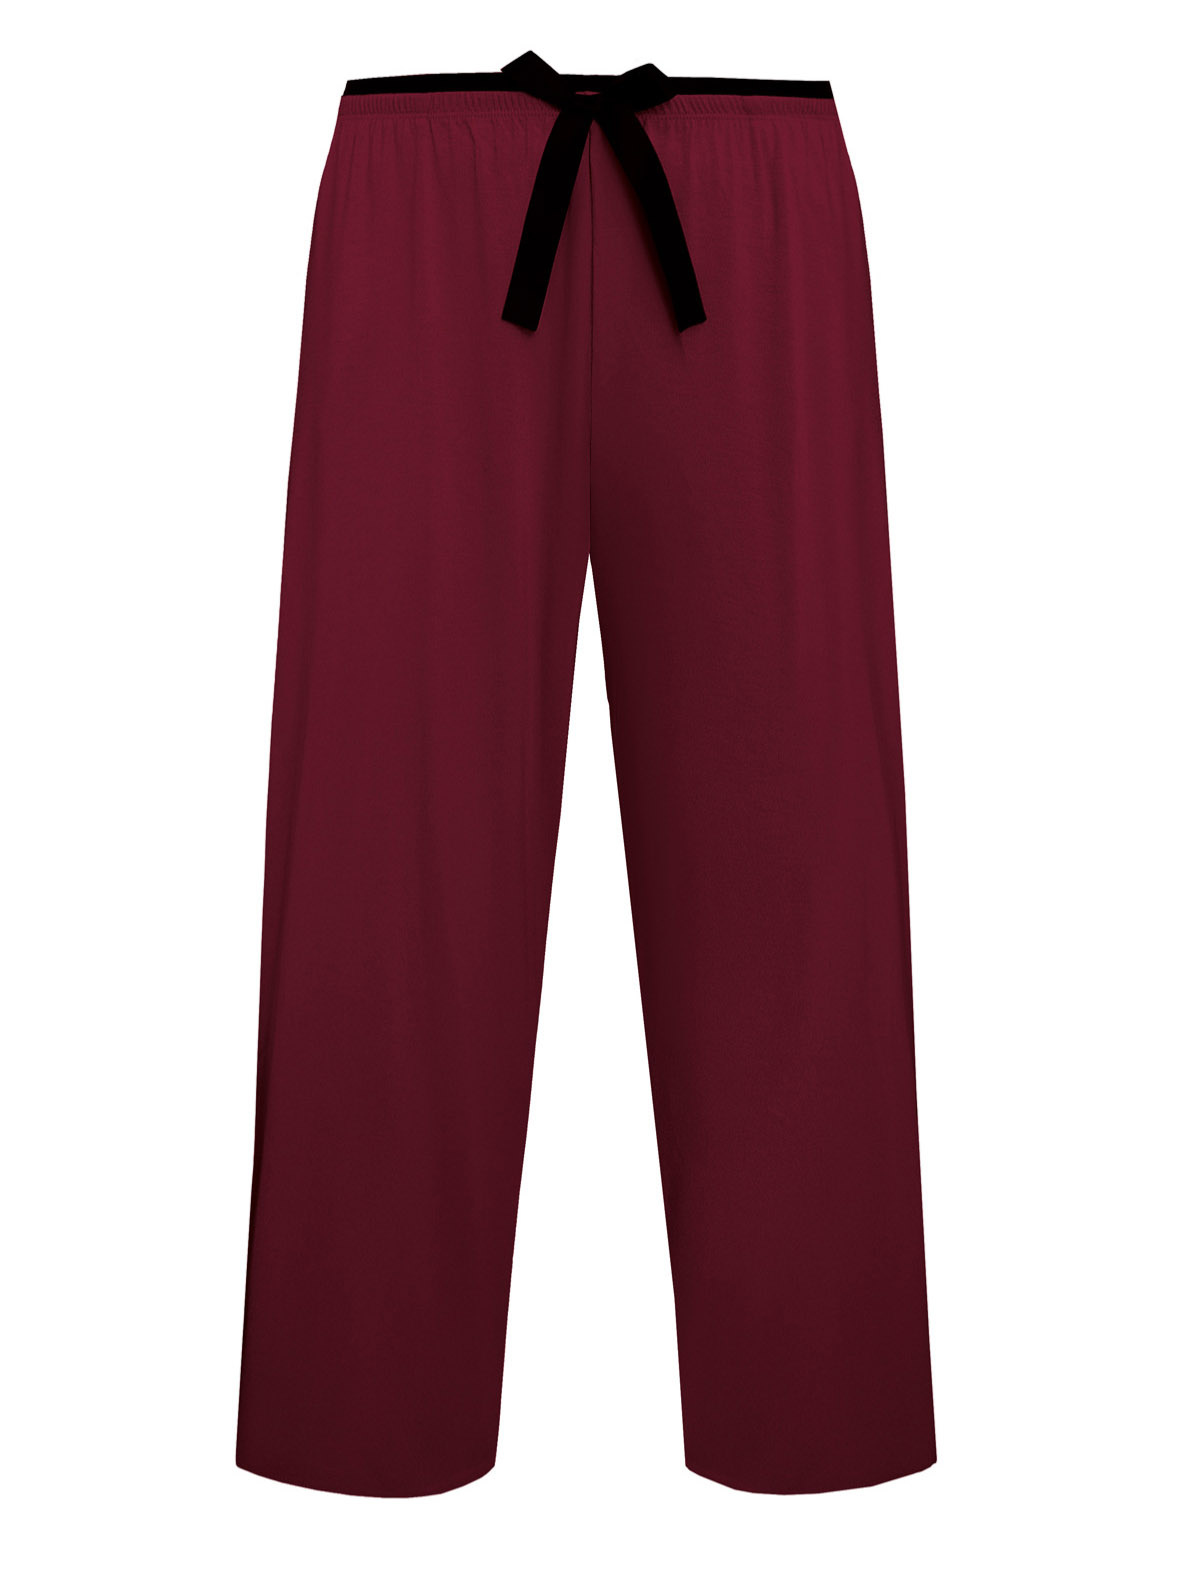 Женские пижамные штаны из нежной вискозы с карманами Nipplex Margot 3/4 #4